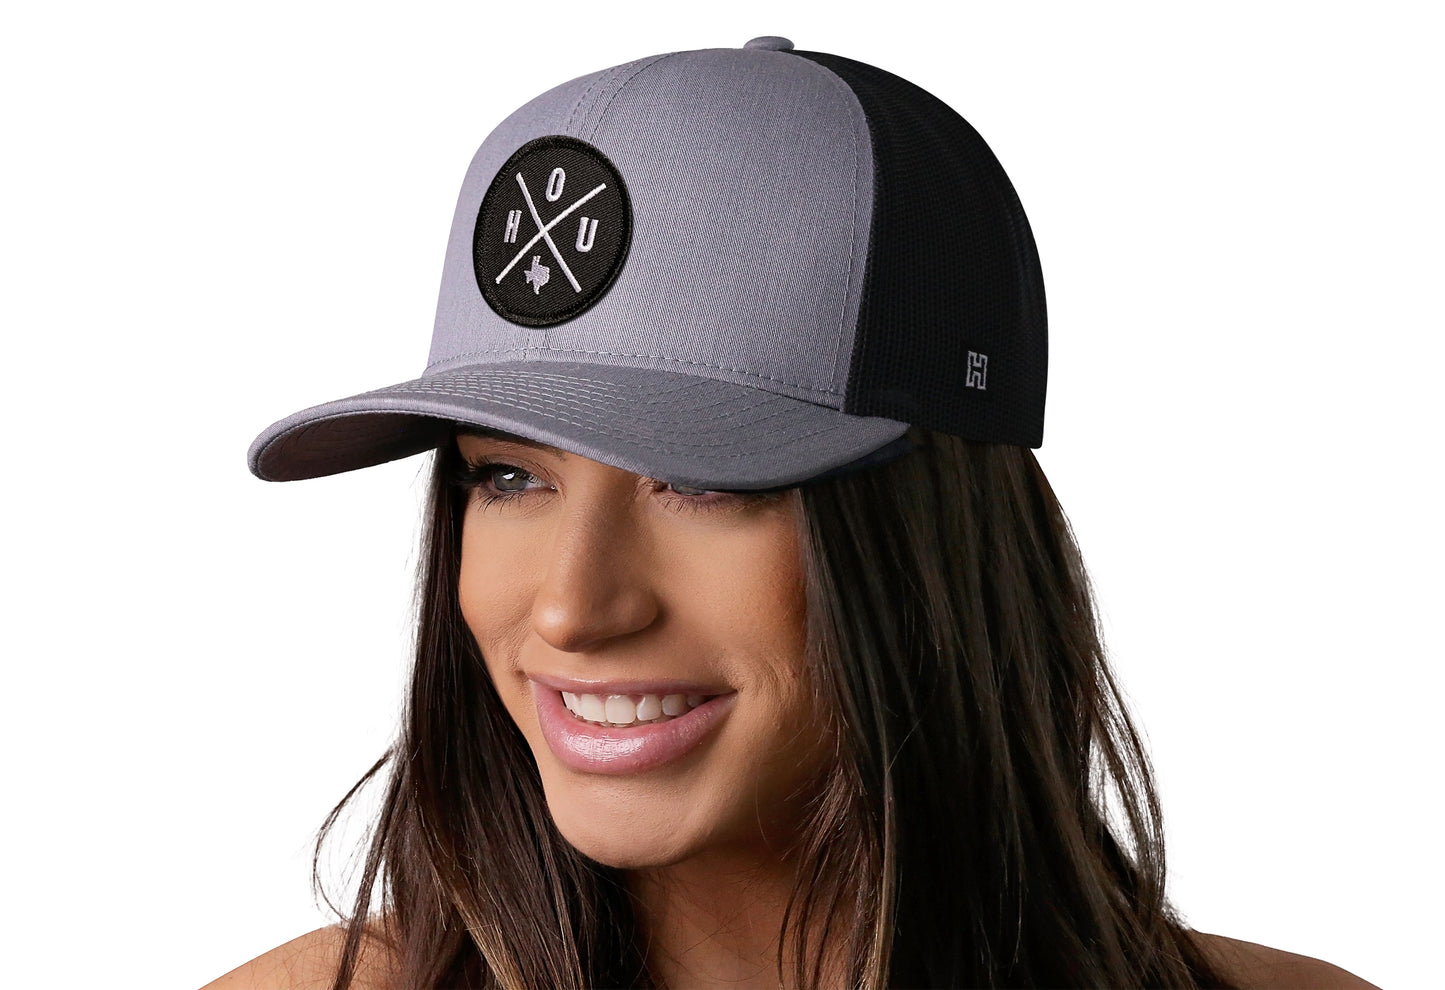 Houston Trucker Hat  |  Gray Black HOU Snapback